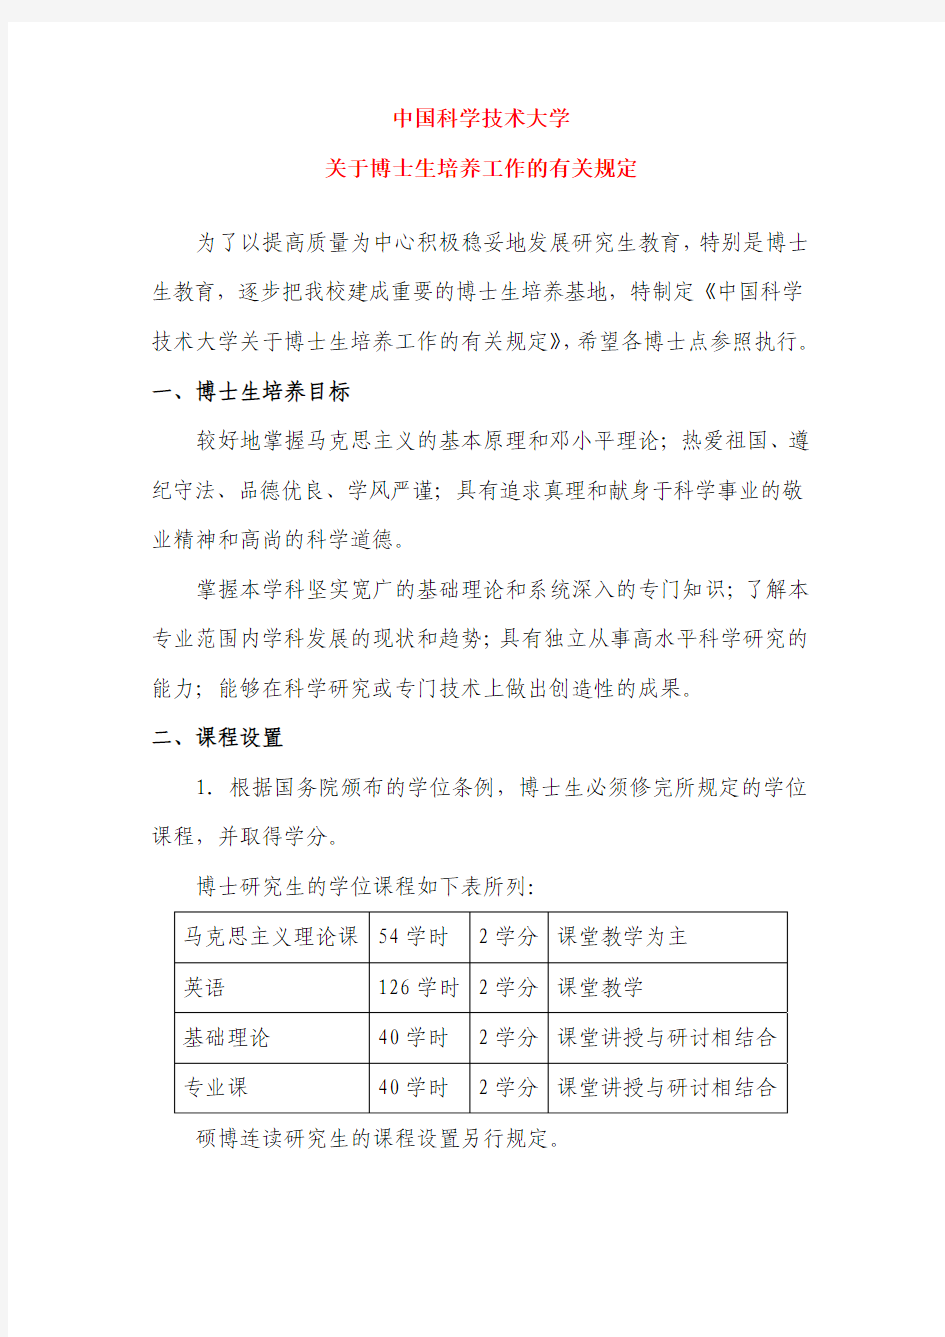 中国科学技术大学关于博士生培养工作的有关规定